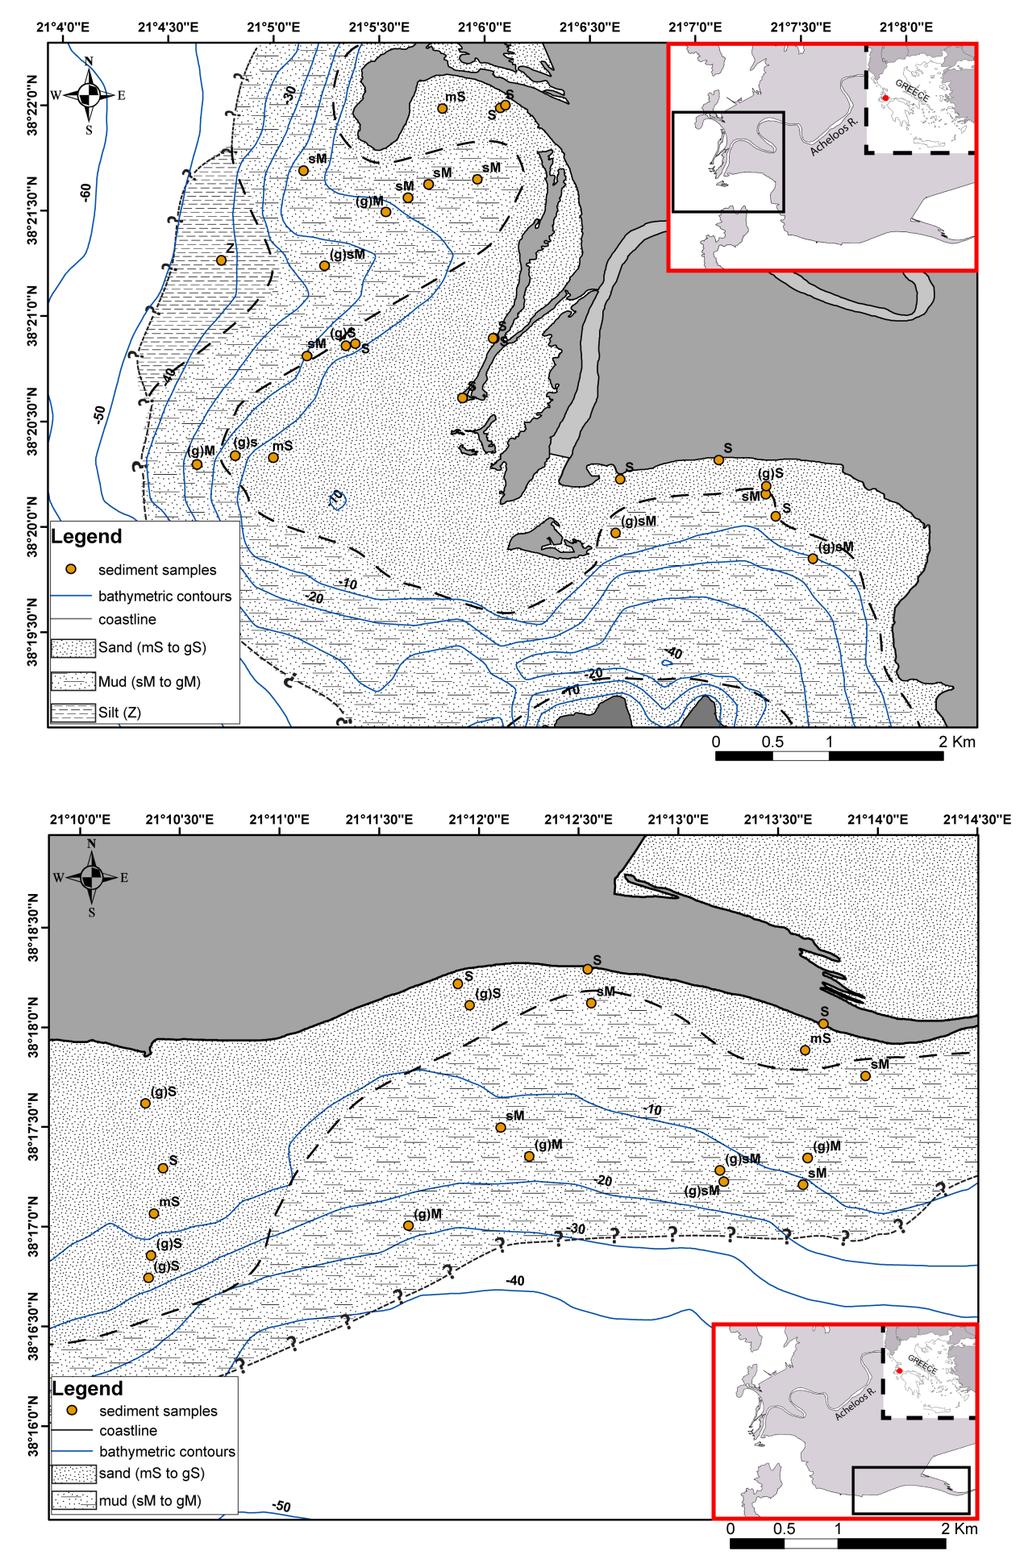 Εικόνα 6: Ιζηματολογικός χάρτης του υποθαλάσσιου δέλτα της Δυτικής περιοχής